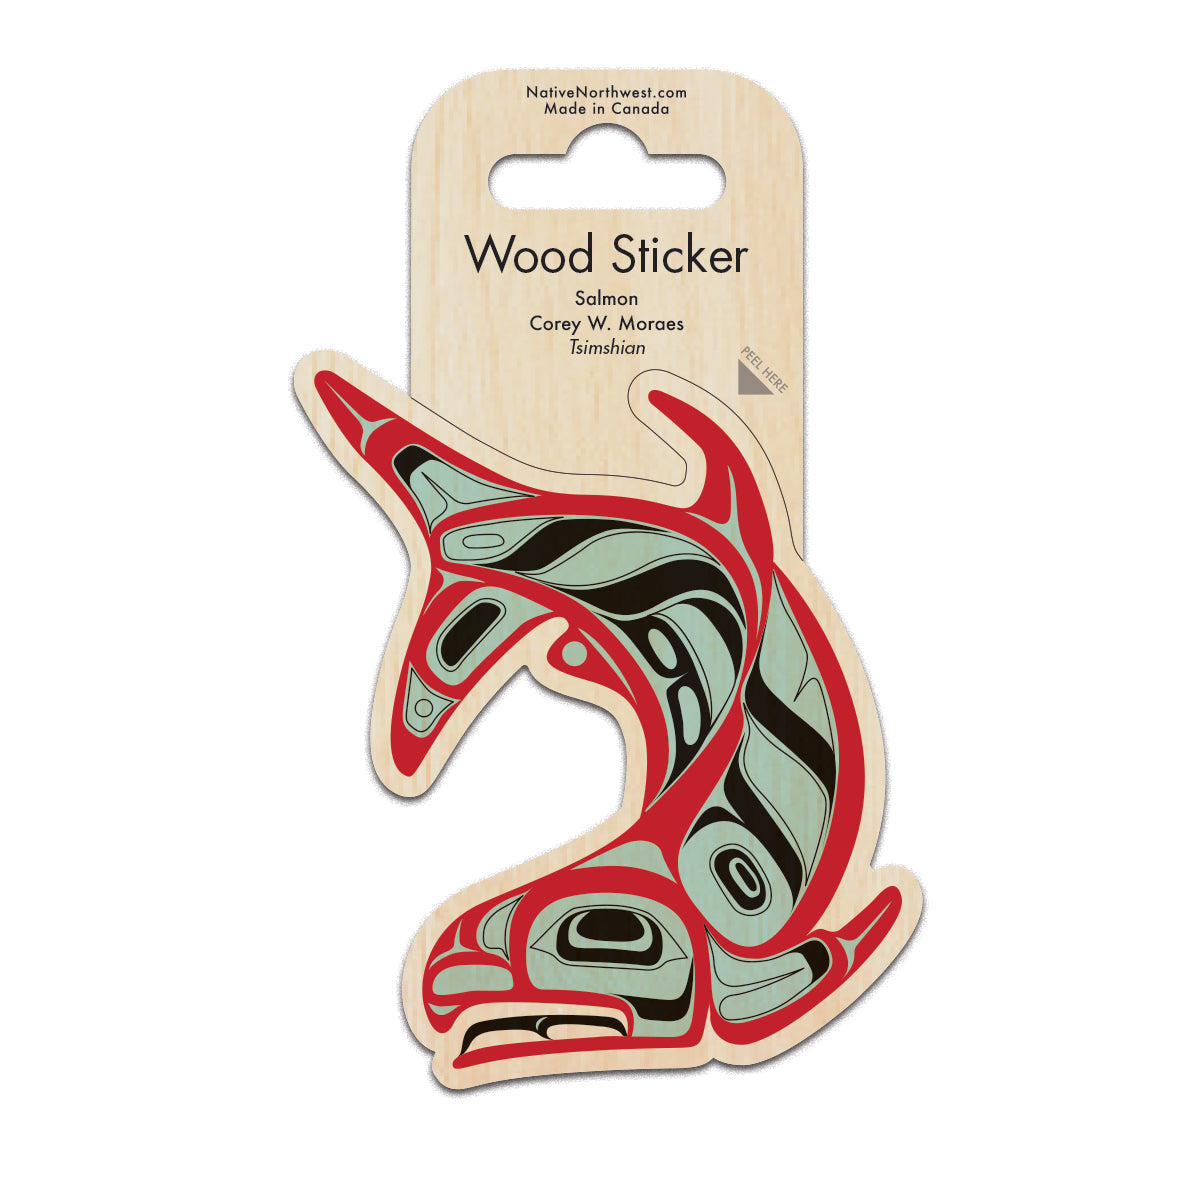 Wood Sticker Salmon - Wood Sticker Salmon -  - House of Himwitsa Native Art Gallery and Gifts